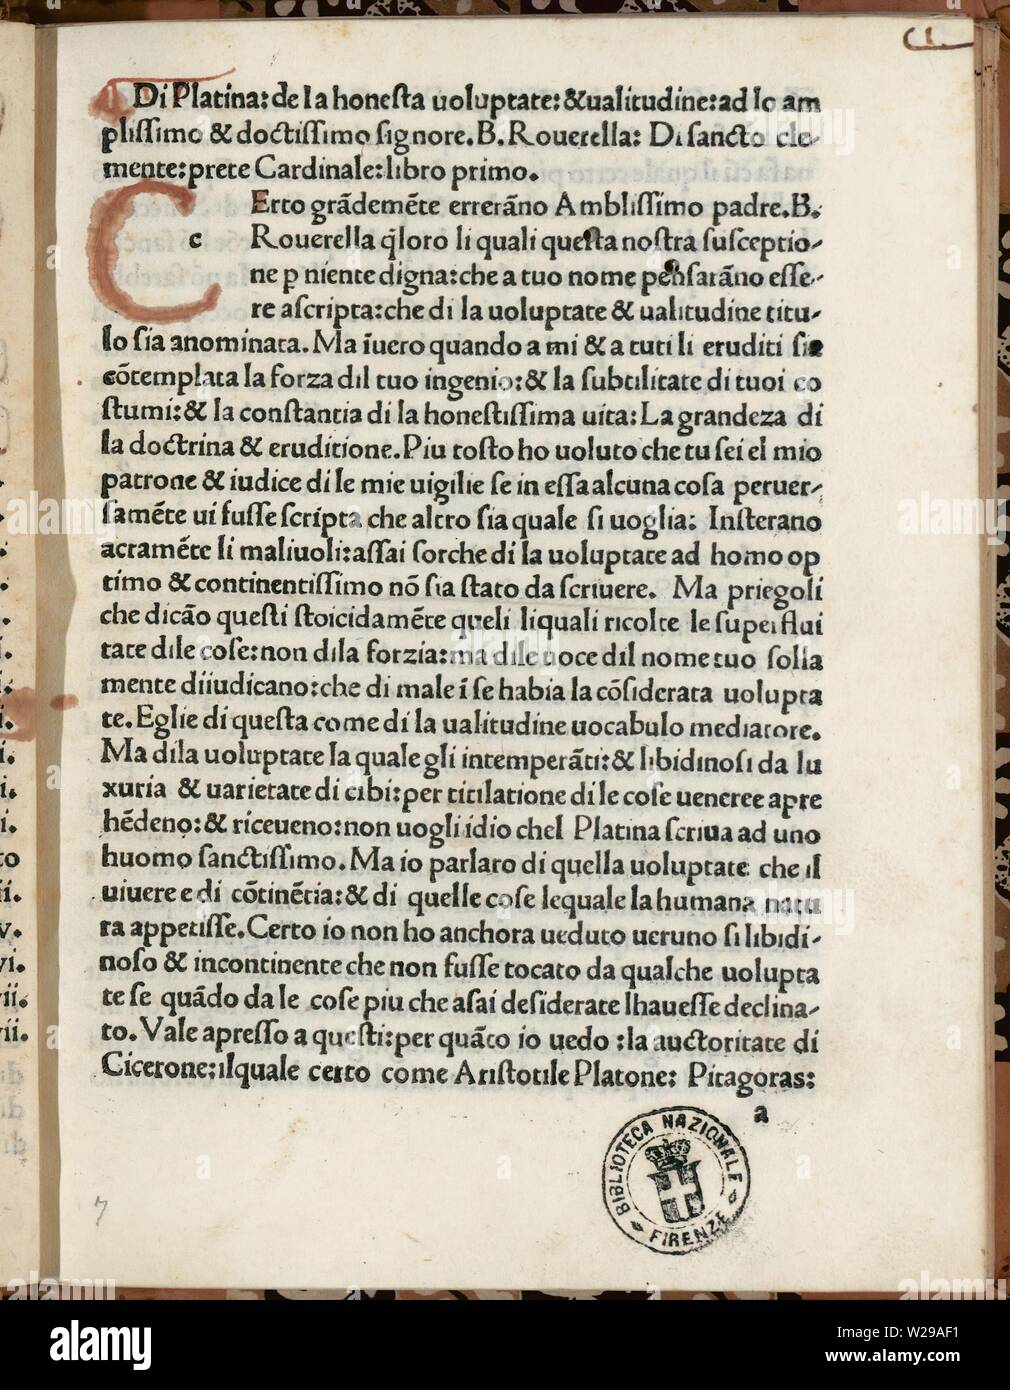 De honesta voluptate et valetudine (sull indulgenza onesto e della buona salute, spesso abbreviato in De honesta voluptate) è stato il primo libro di cucina mai stampato. Scritto ca. 1465 da Bartolomeo Platina. Foto Stock